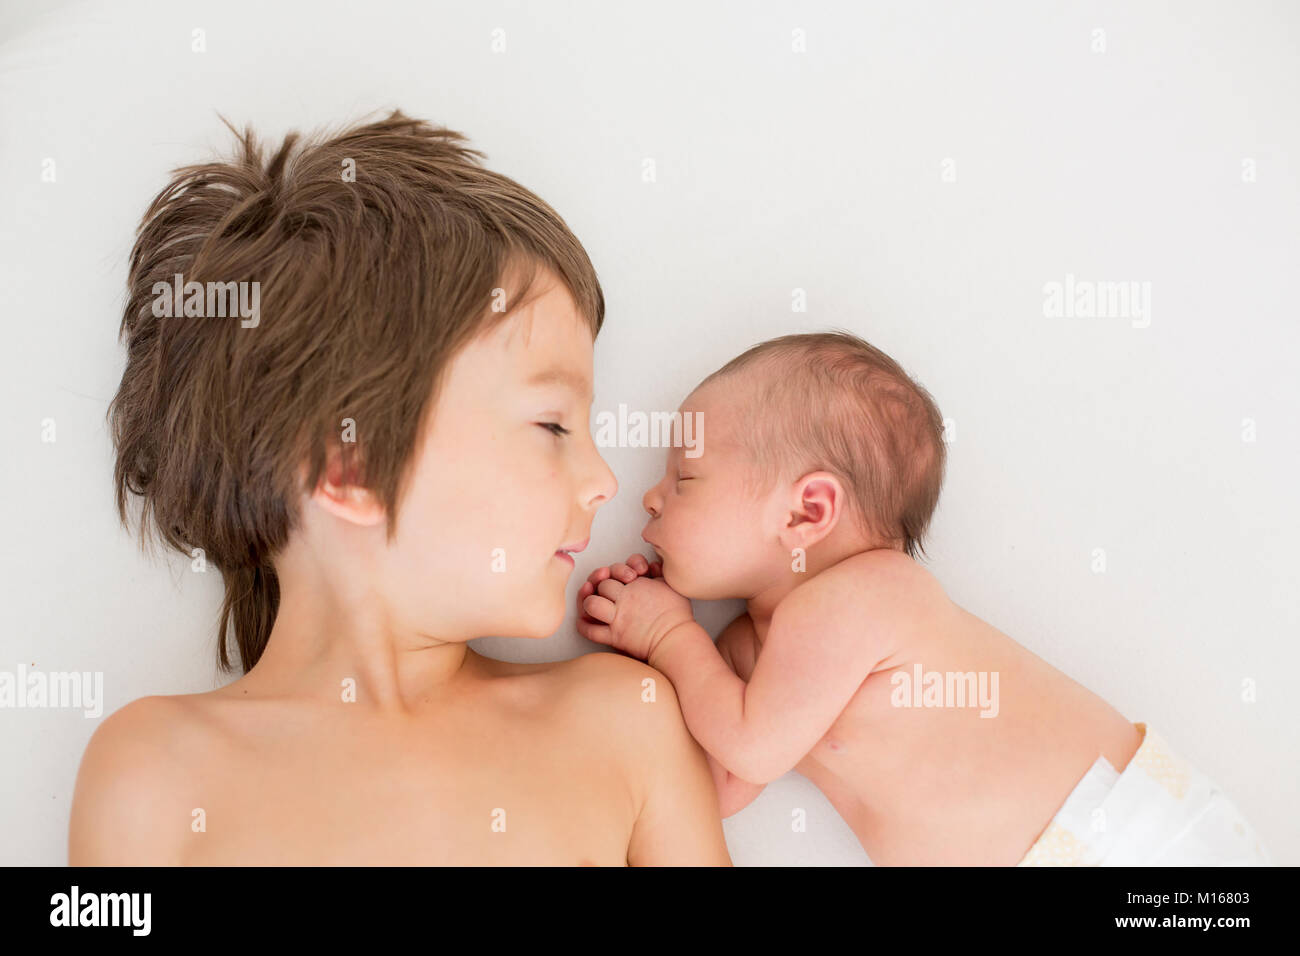 Bel ragazzo, abbracciando con tenerezza e cura il suo neonato fratello a casa. Famiglia felicità amore concetto Foto Stock